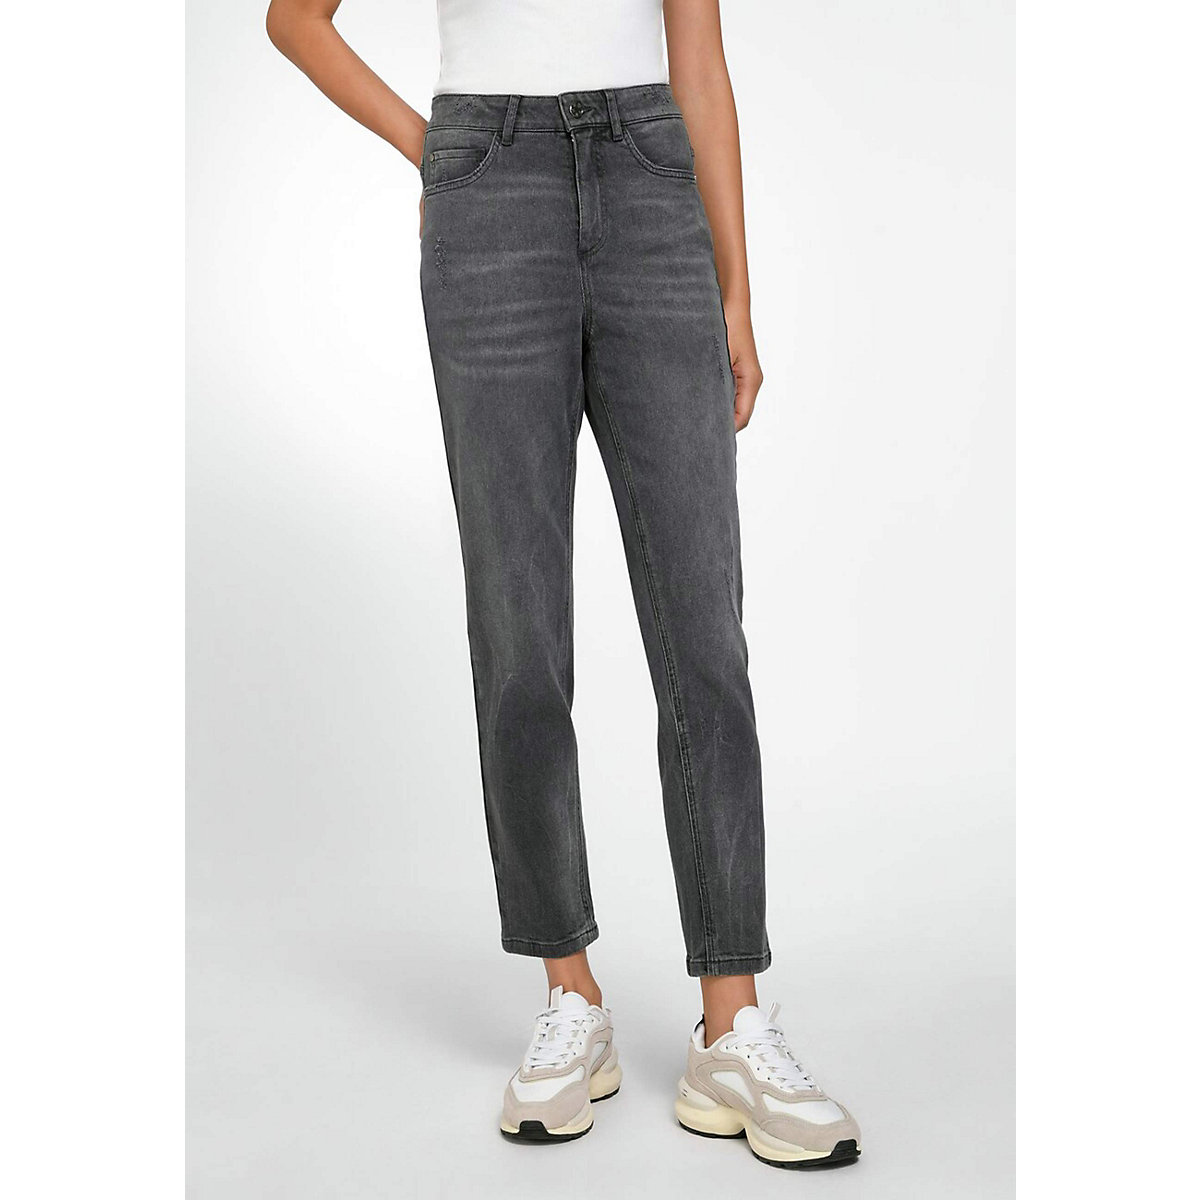 BASLER 5-Pocket Jeans Cotton Jeanshosen grau